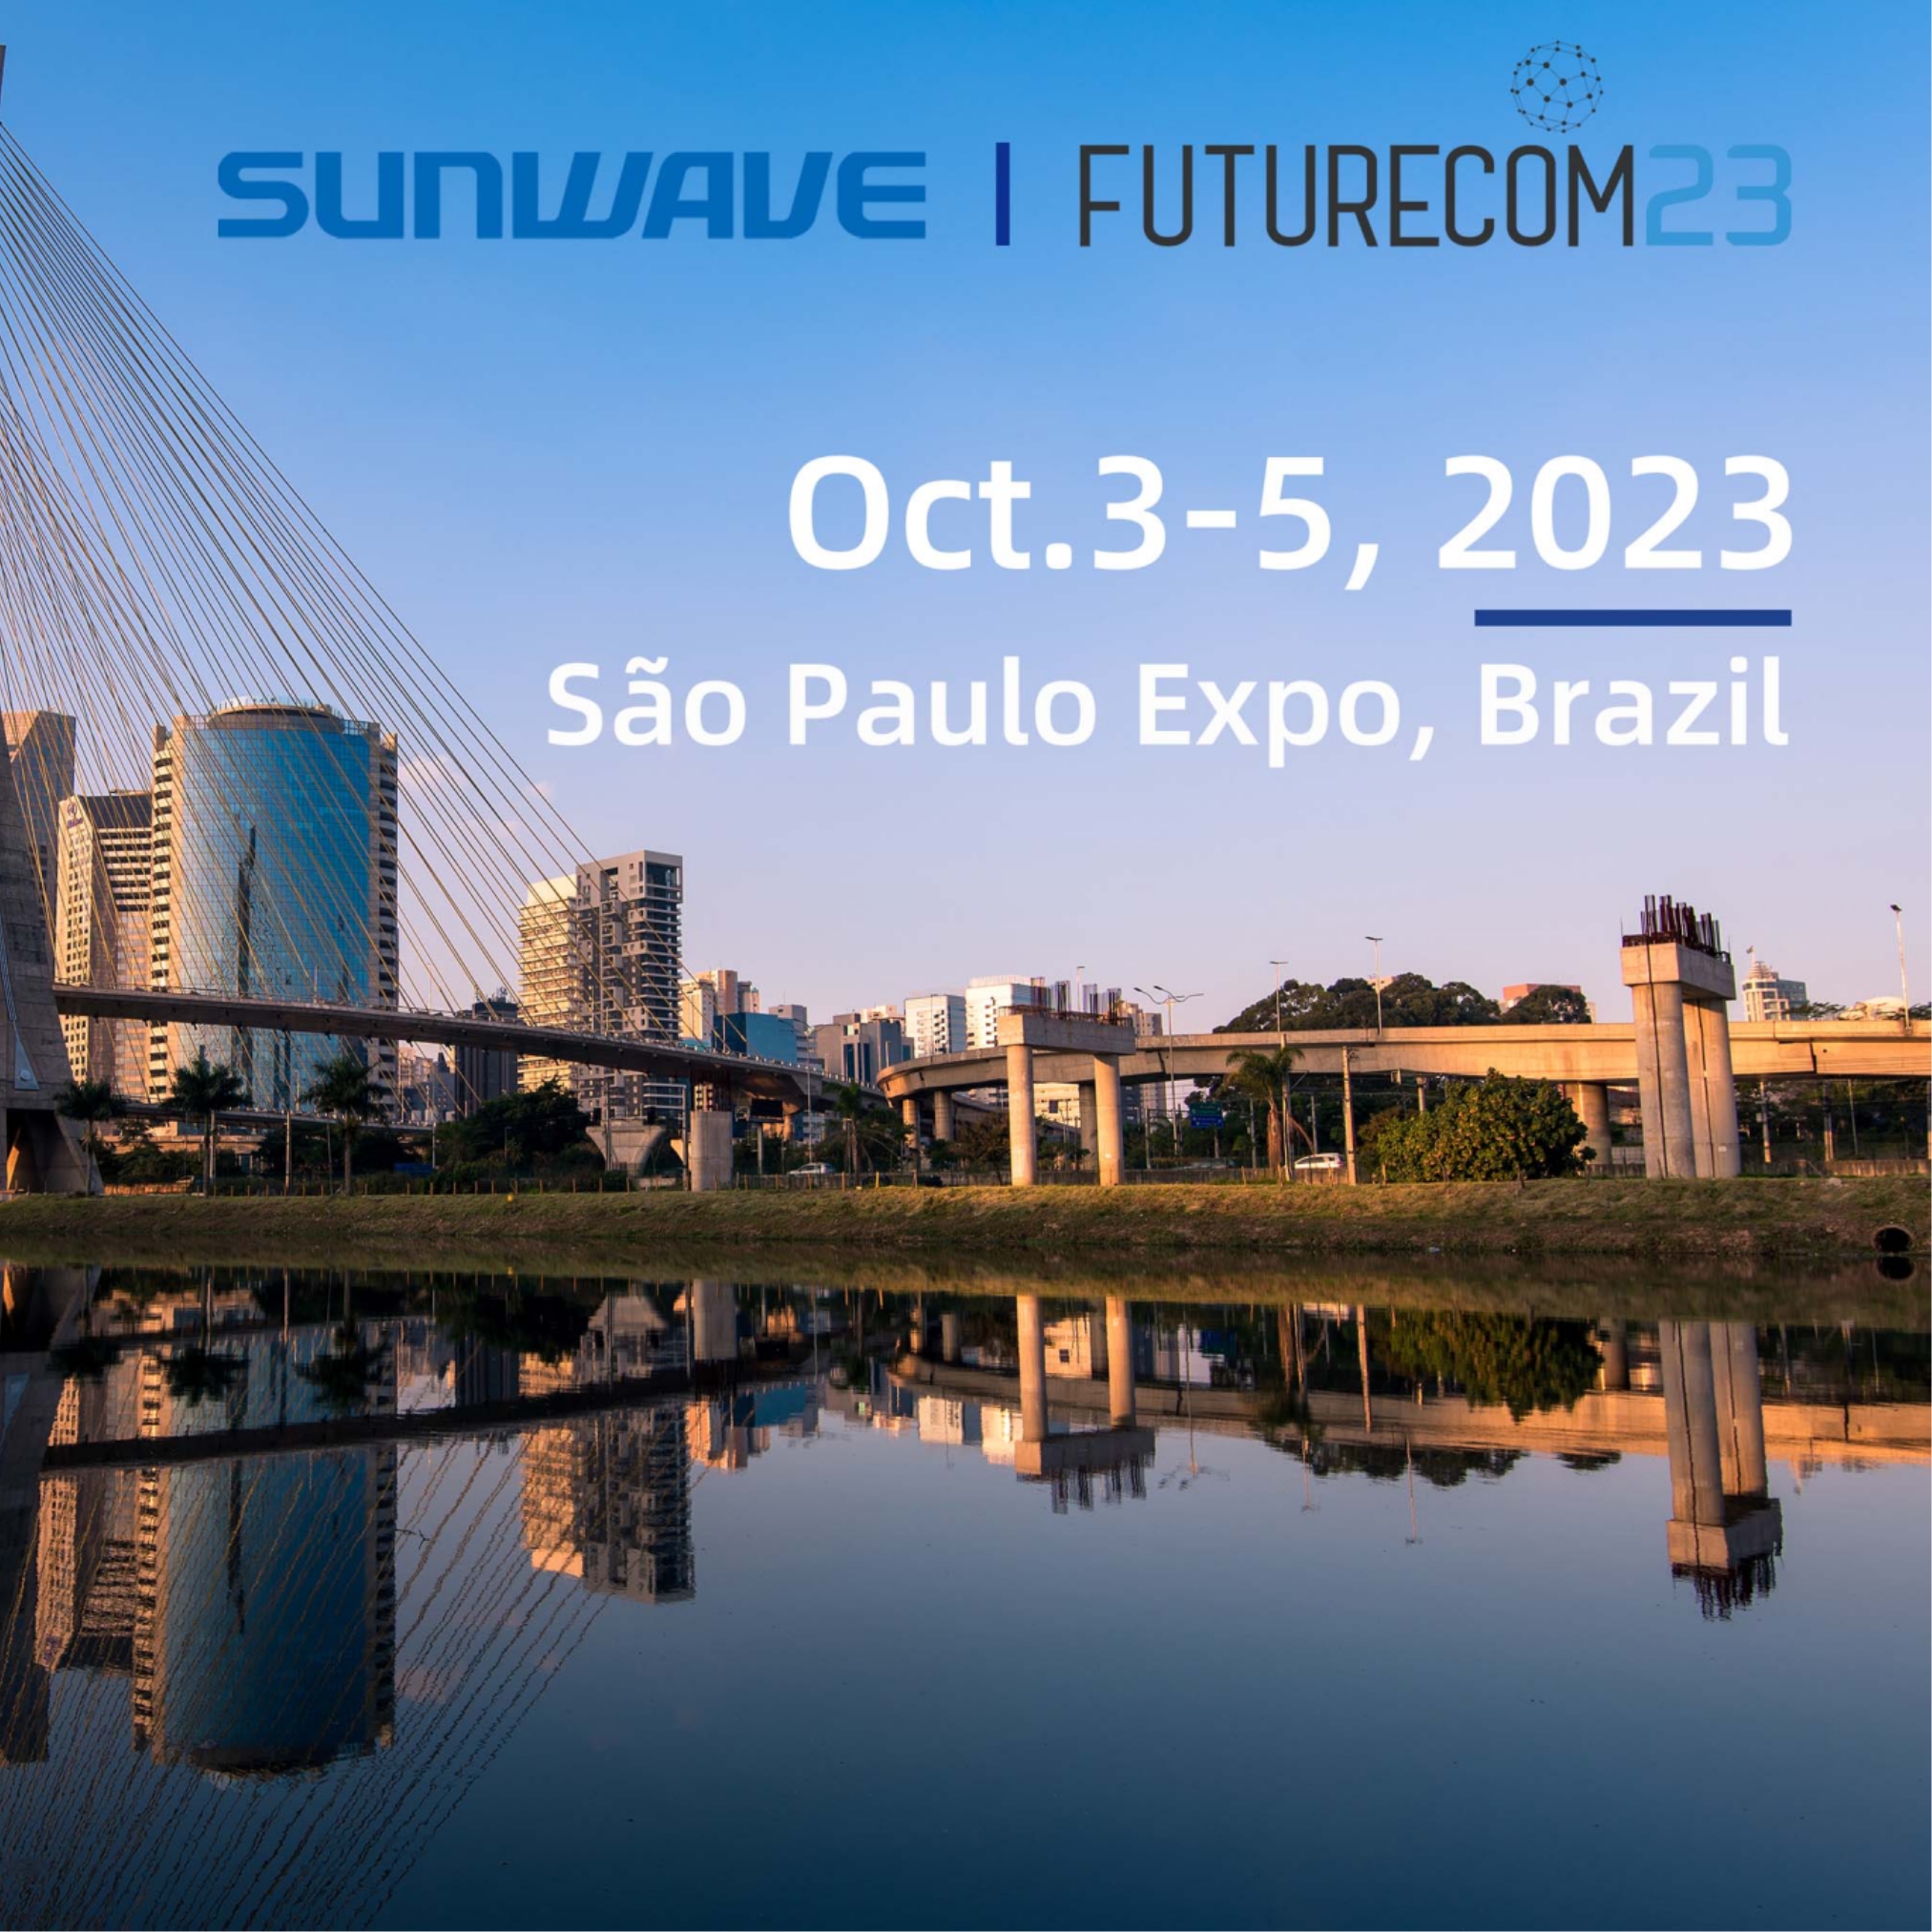 Meet with Sunwave at Futurecom 2023